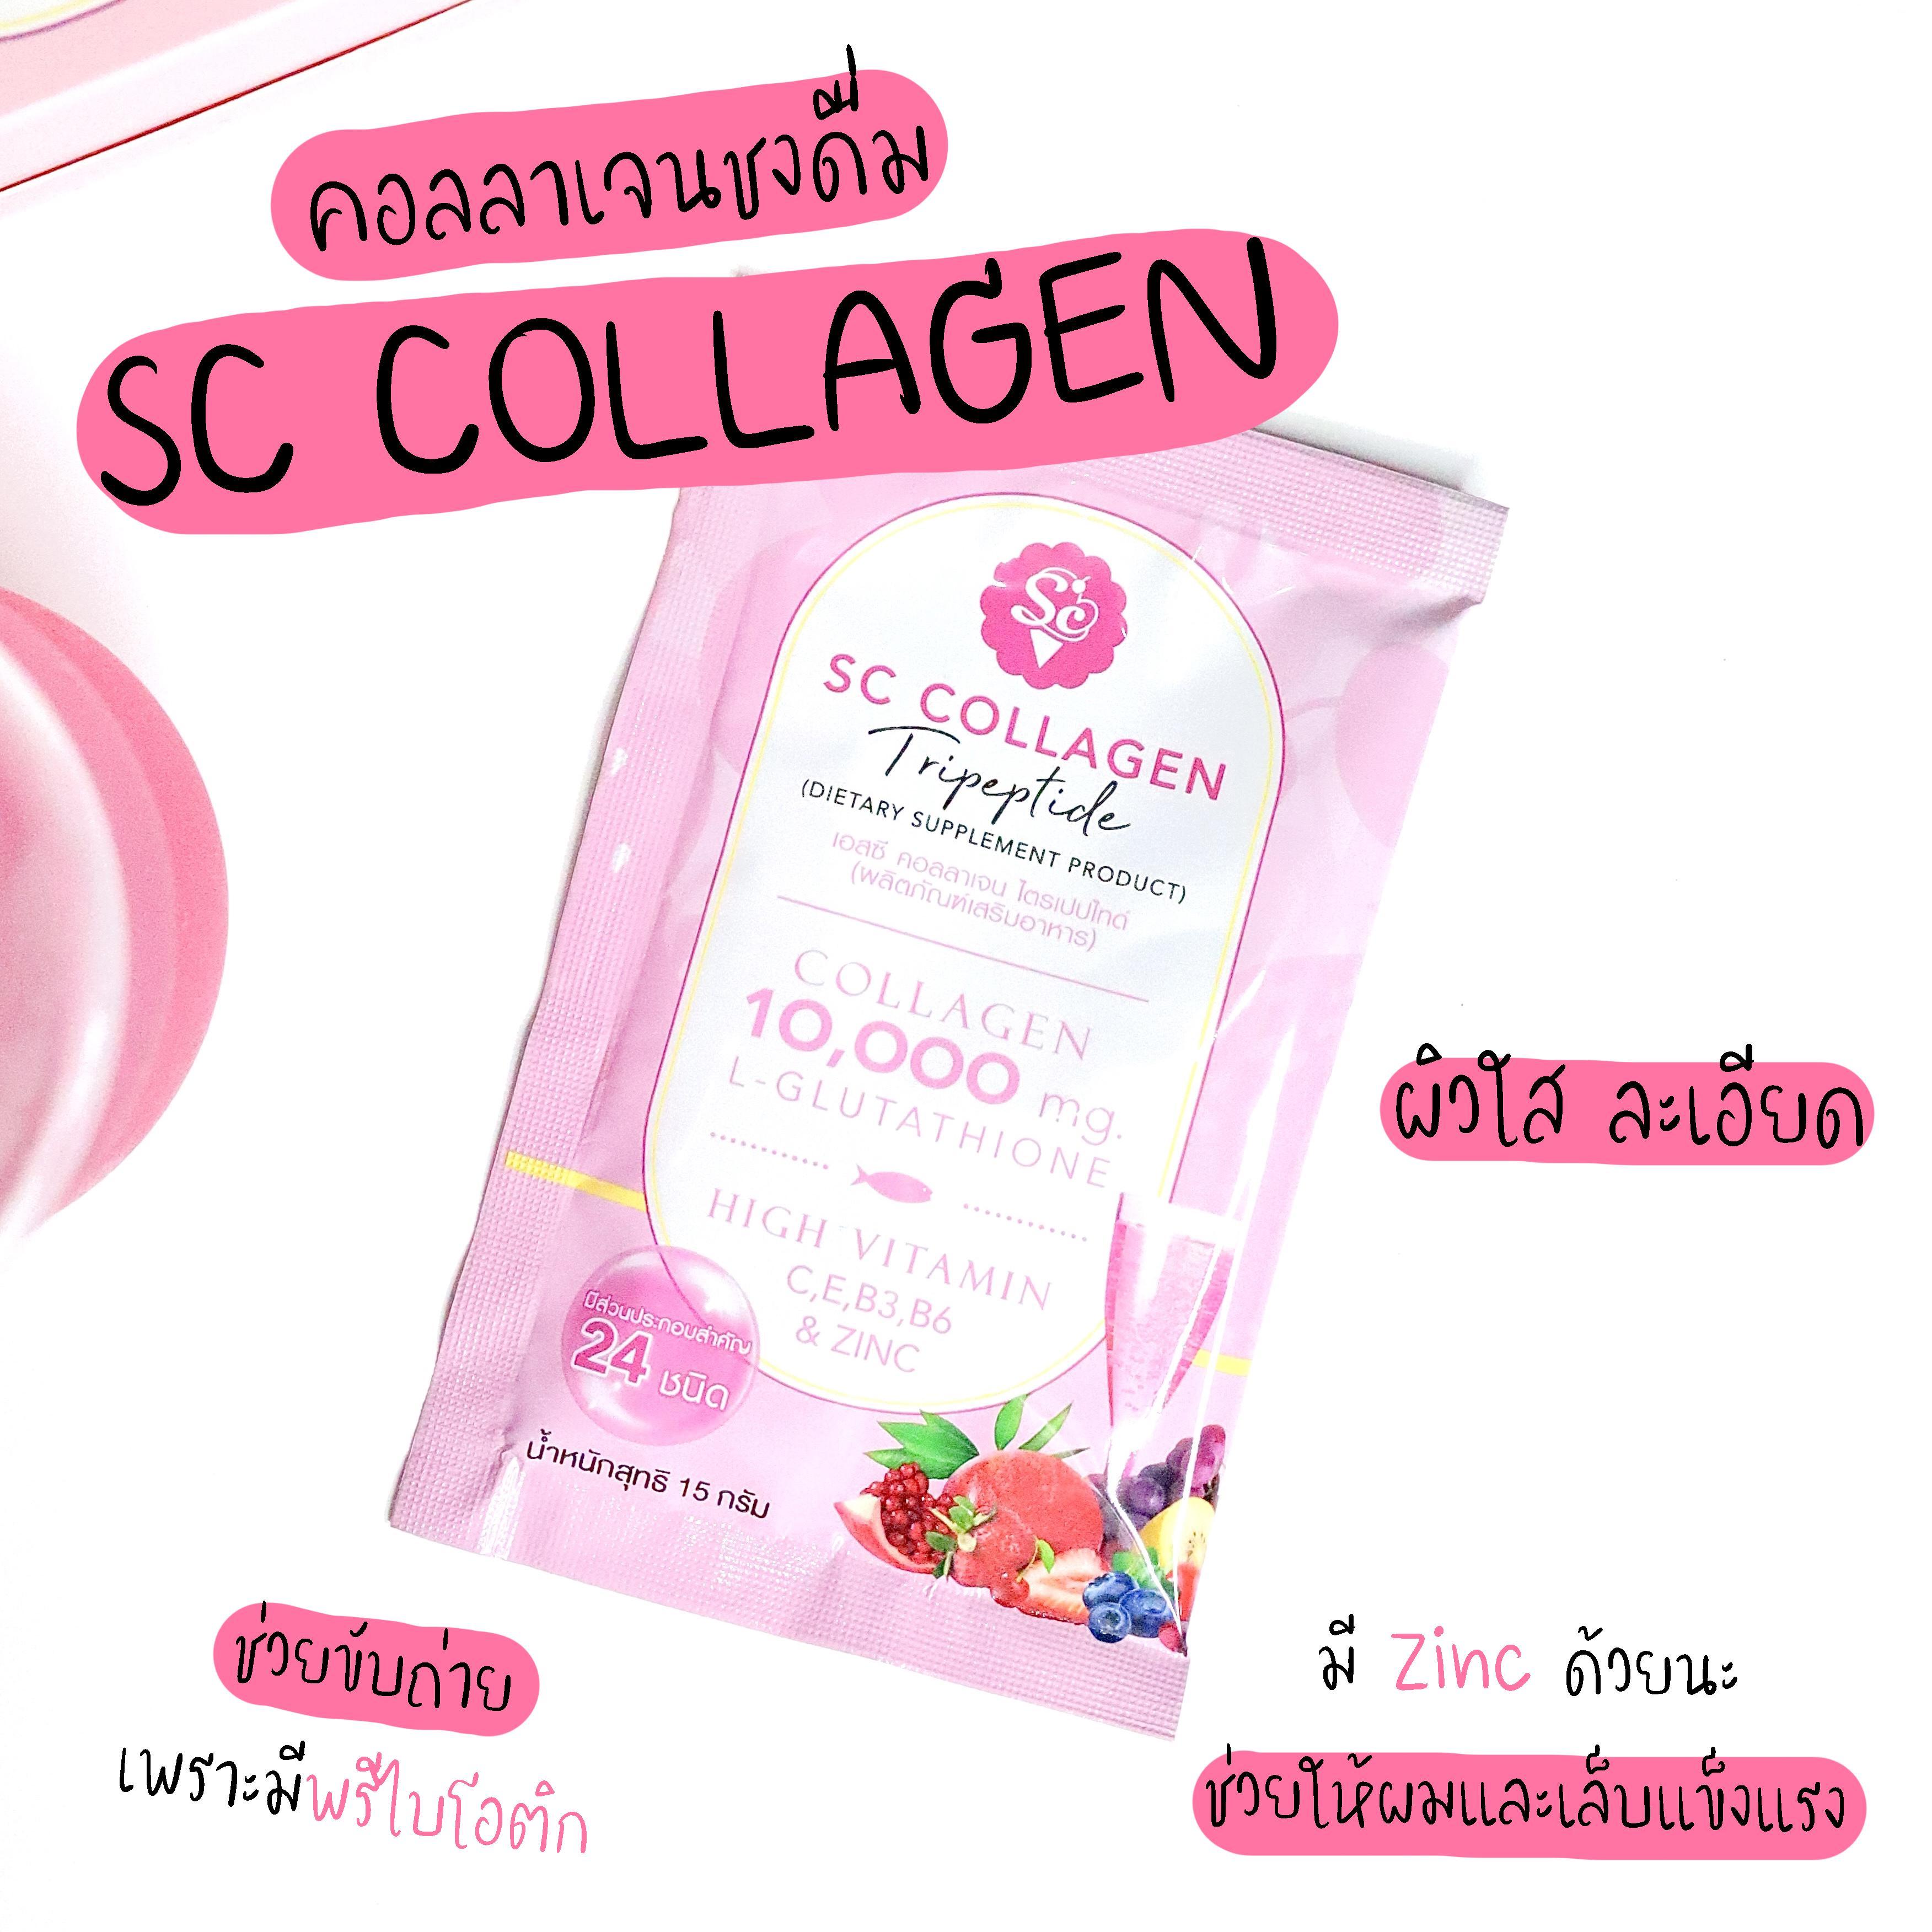 ภาพหน้าปก SC Collagen Plus Prebiotic & Multi Vitamin คอลลาเจนผิวใสเกรดพรีเมี่ยมมาตฐานญี่ปุ่น 👍 ที่:0